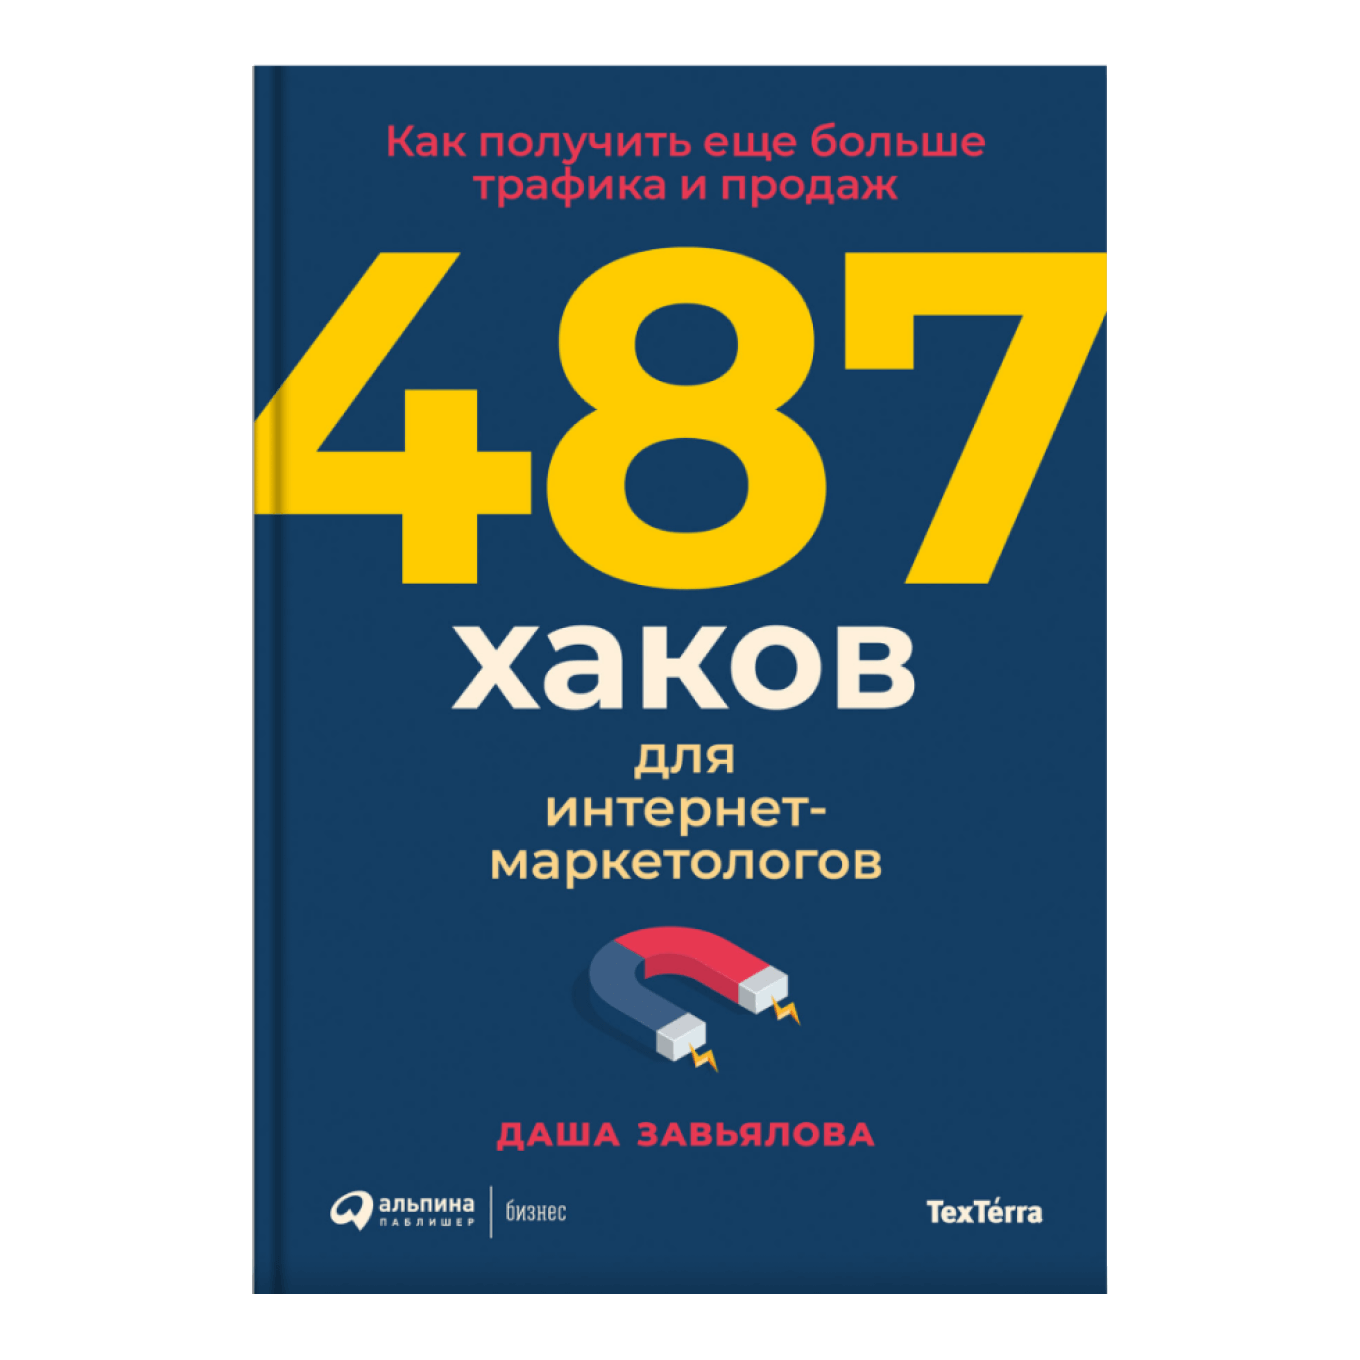 Книга «487 хаков для интернет-маркетологов. Как получить еще больше трафика и продаж», Даша Завьялова